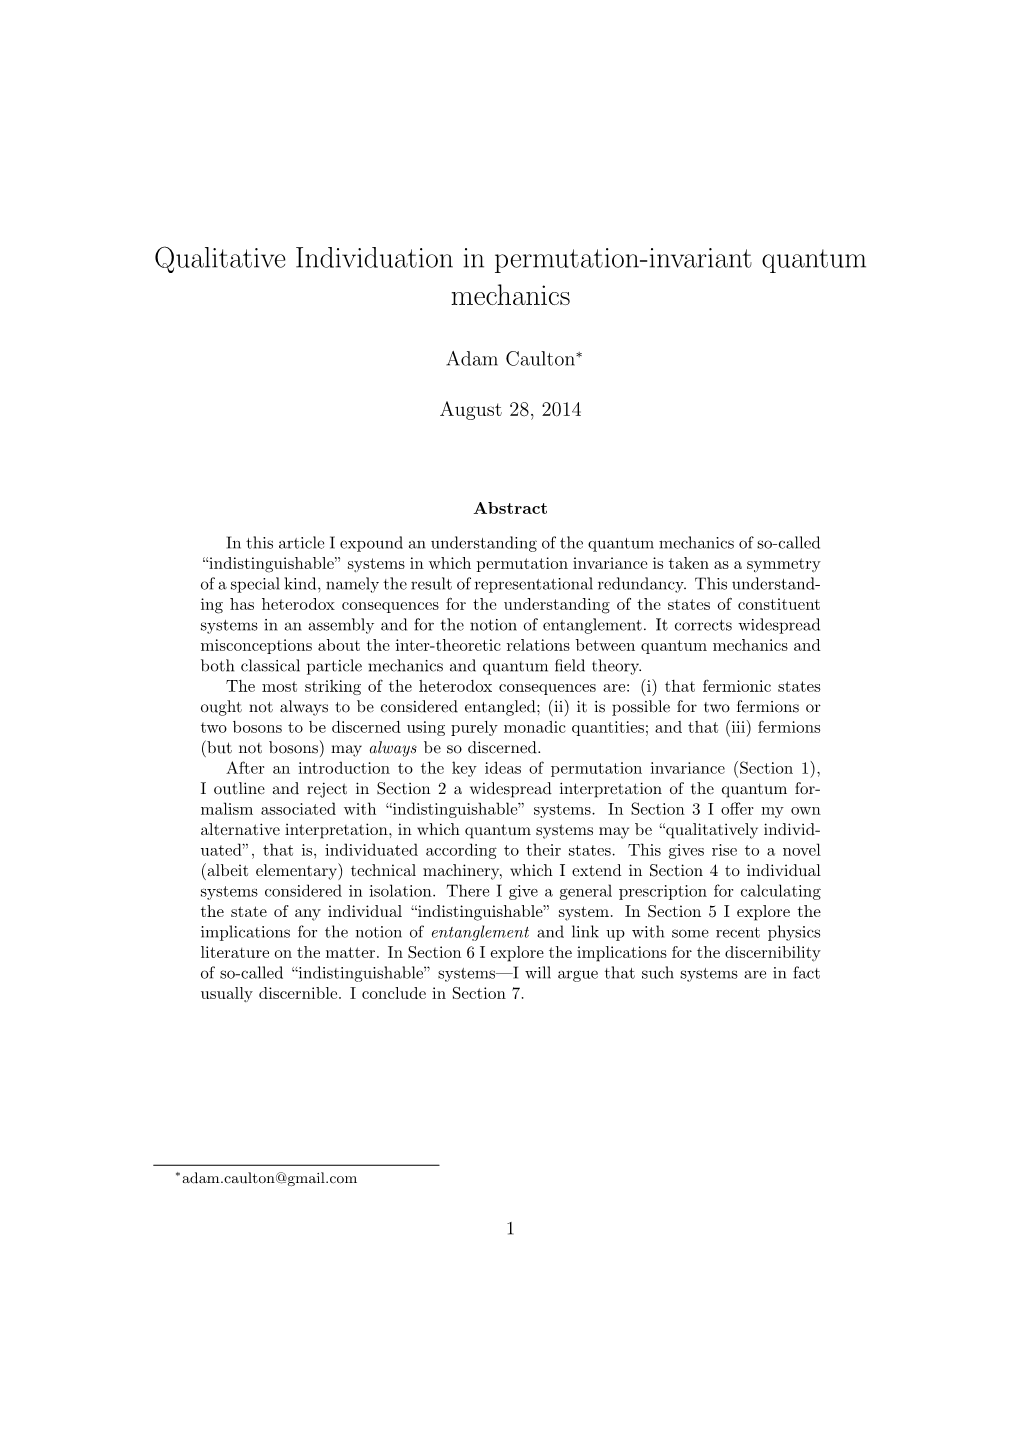 Qualitative Individuation in Permutation-Invariant Quantum Mechanics